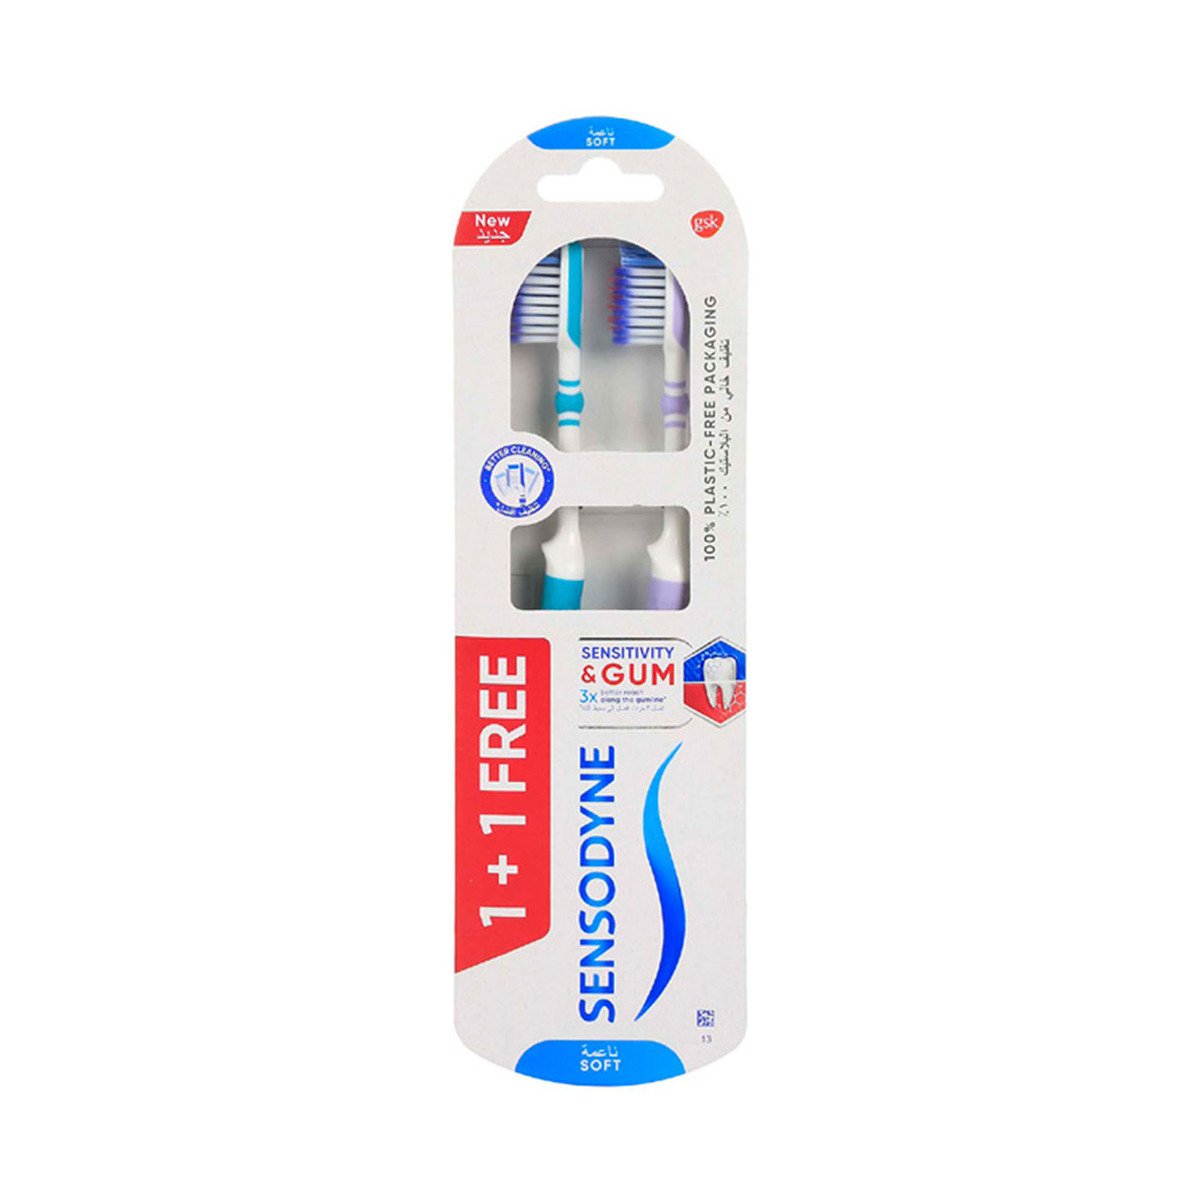 Sensodyne Sensitivity & Gum Toothbrush Soft 1+1